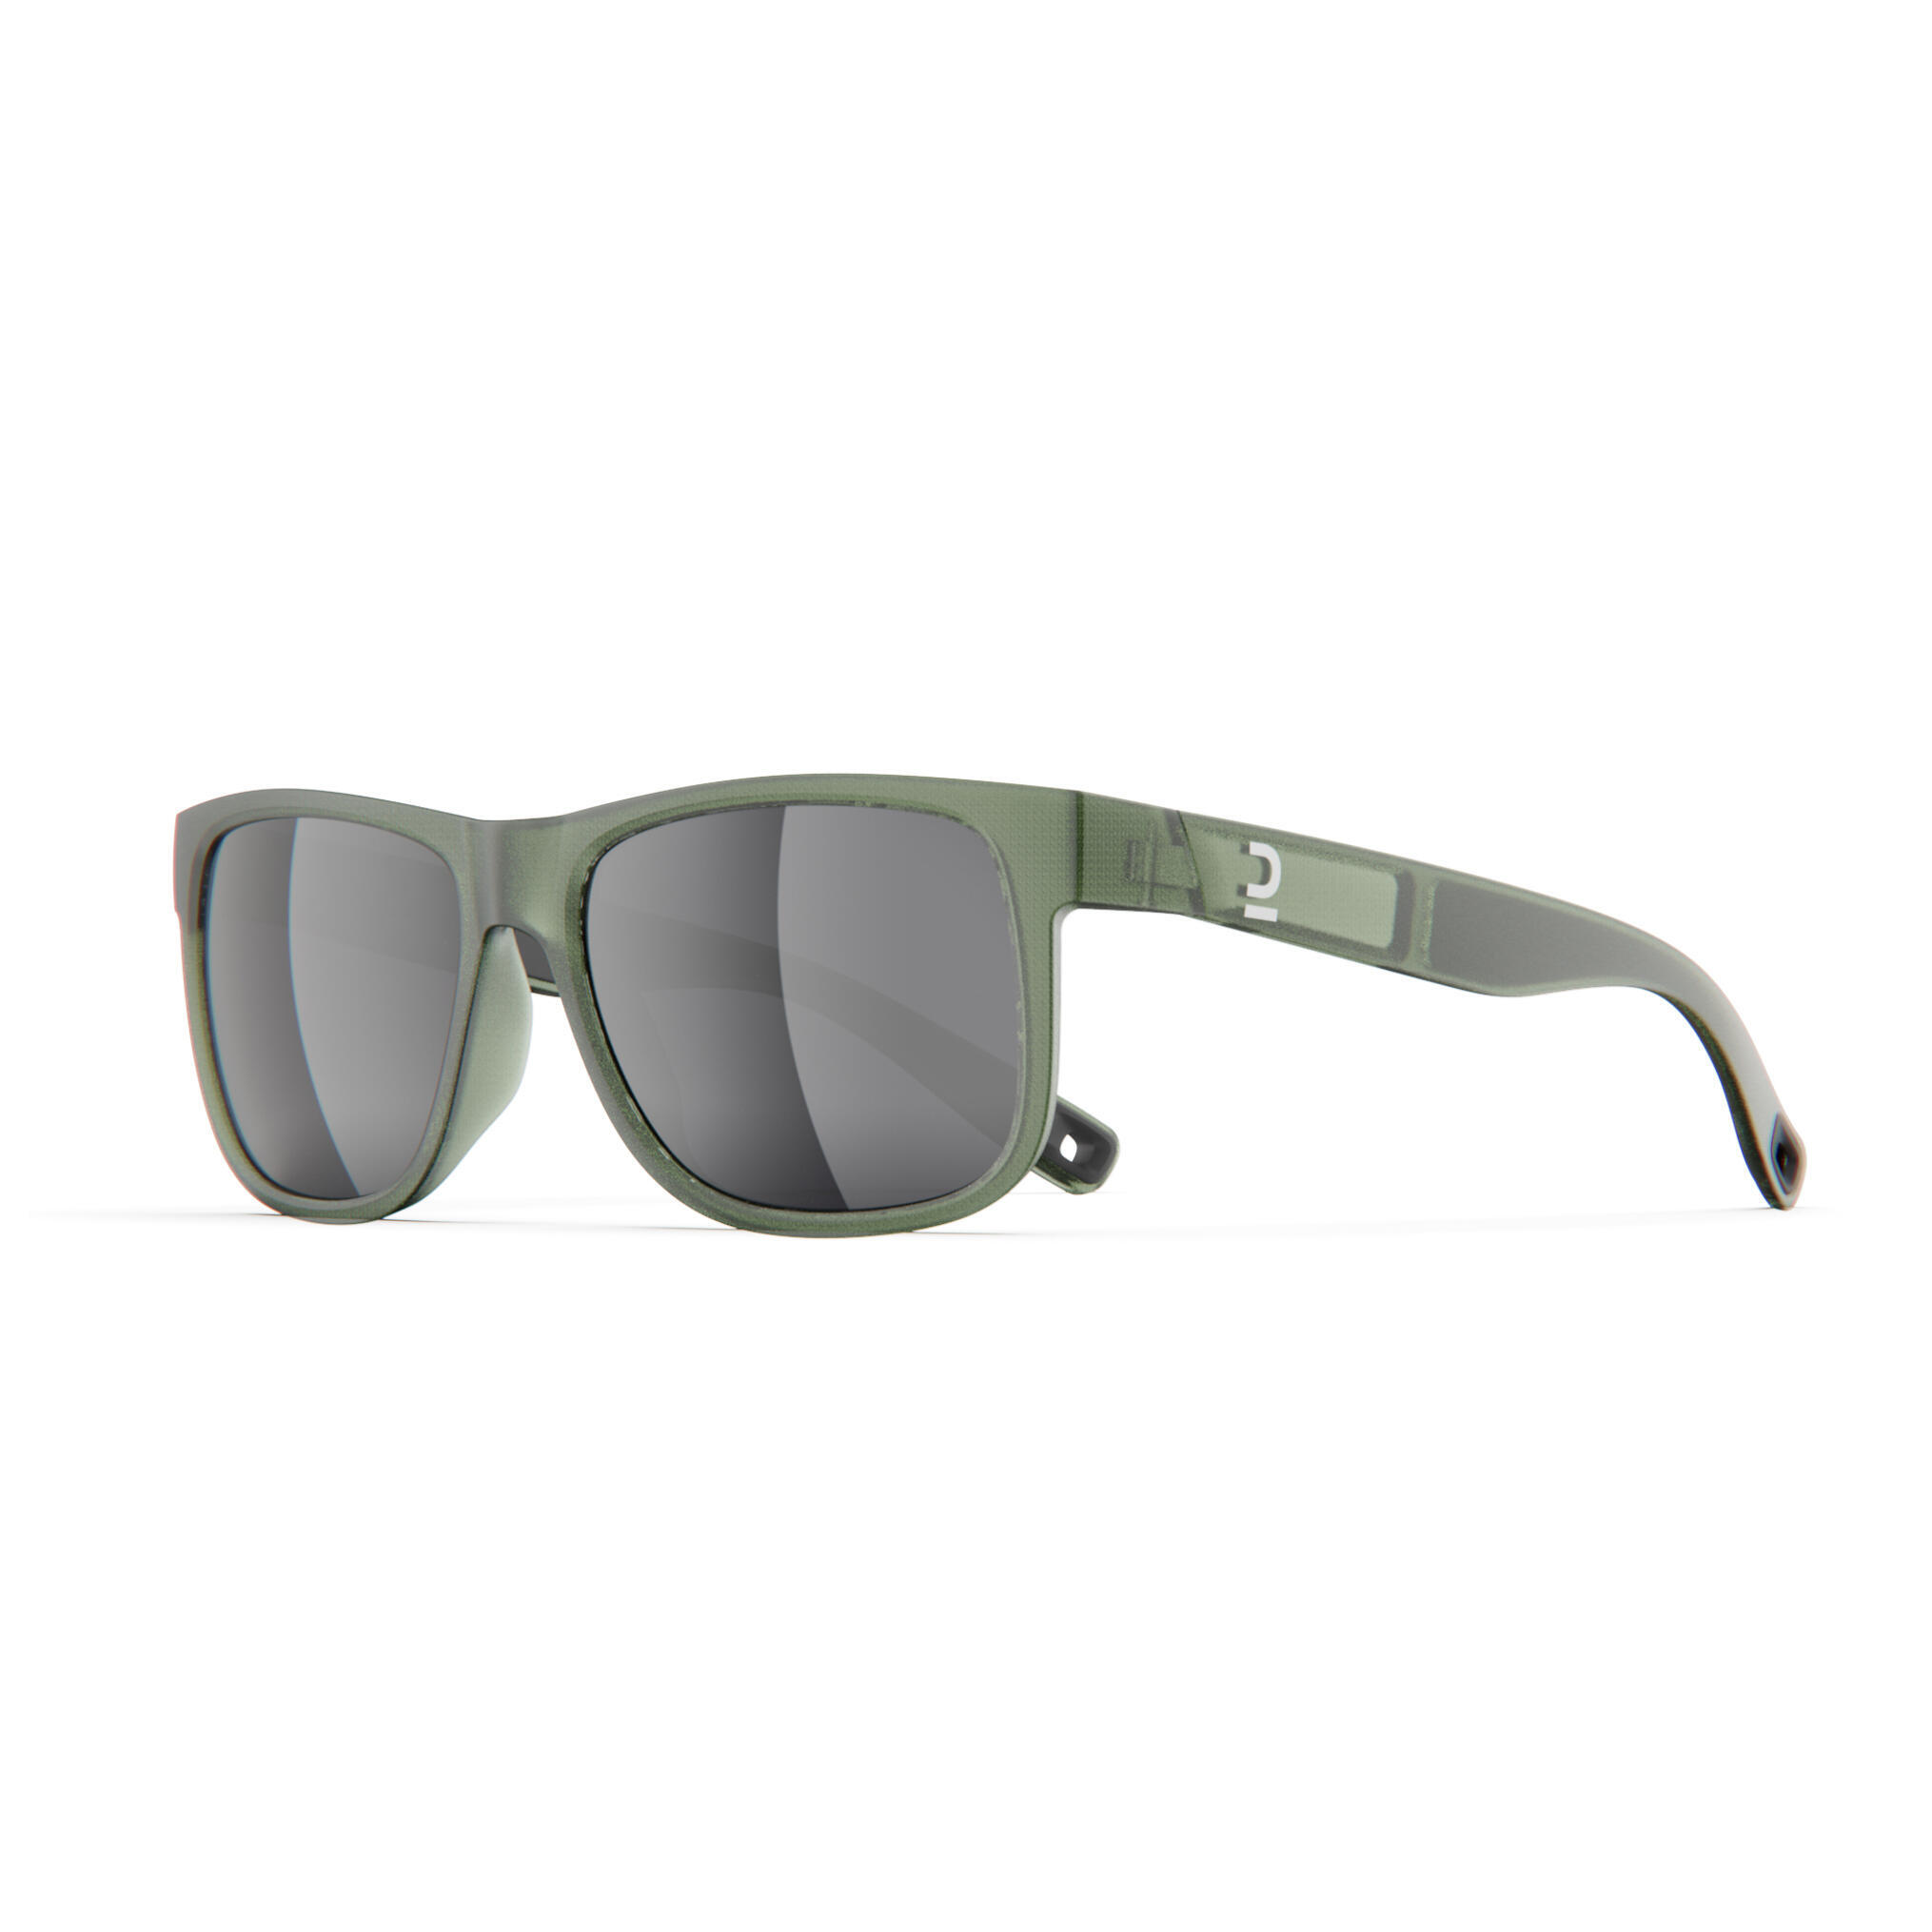 Очки солнцезащитные Quechua MH530 для походов, категории 3, хаки / серебристый / лаврово-зеленый солнцезащитные очки alberto casiano phantom серебристый